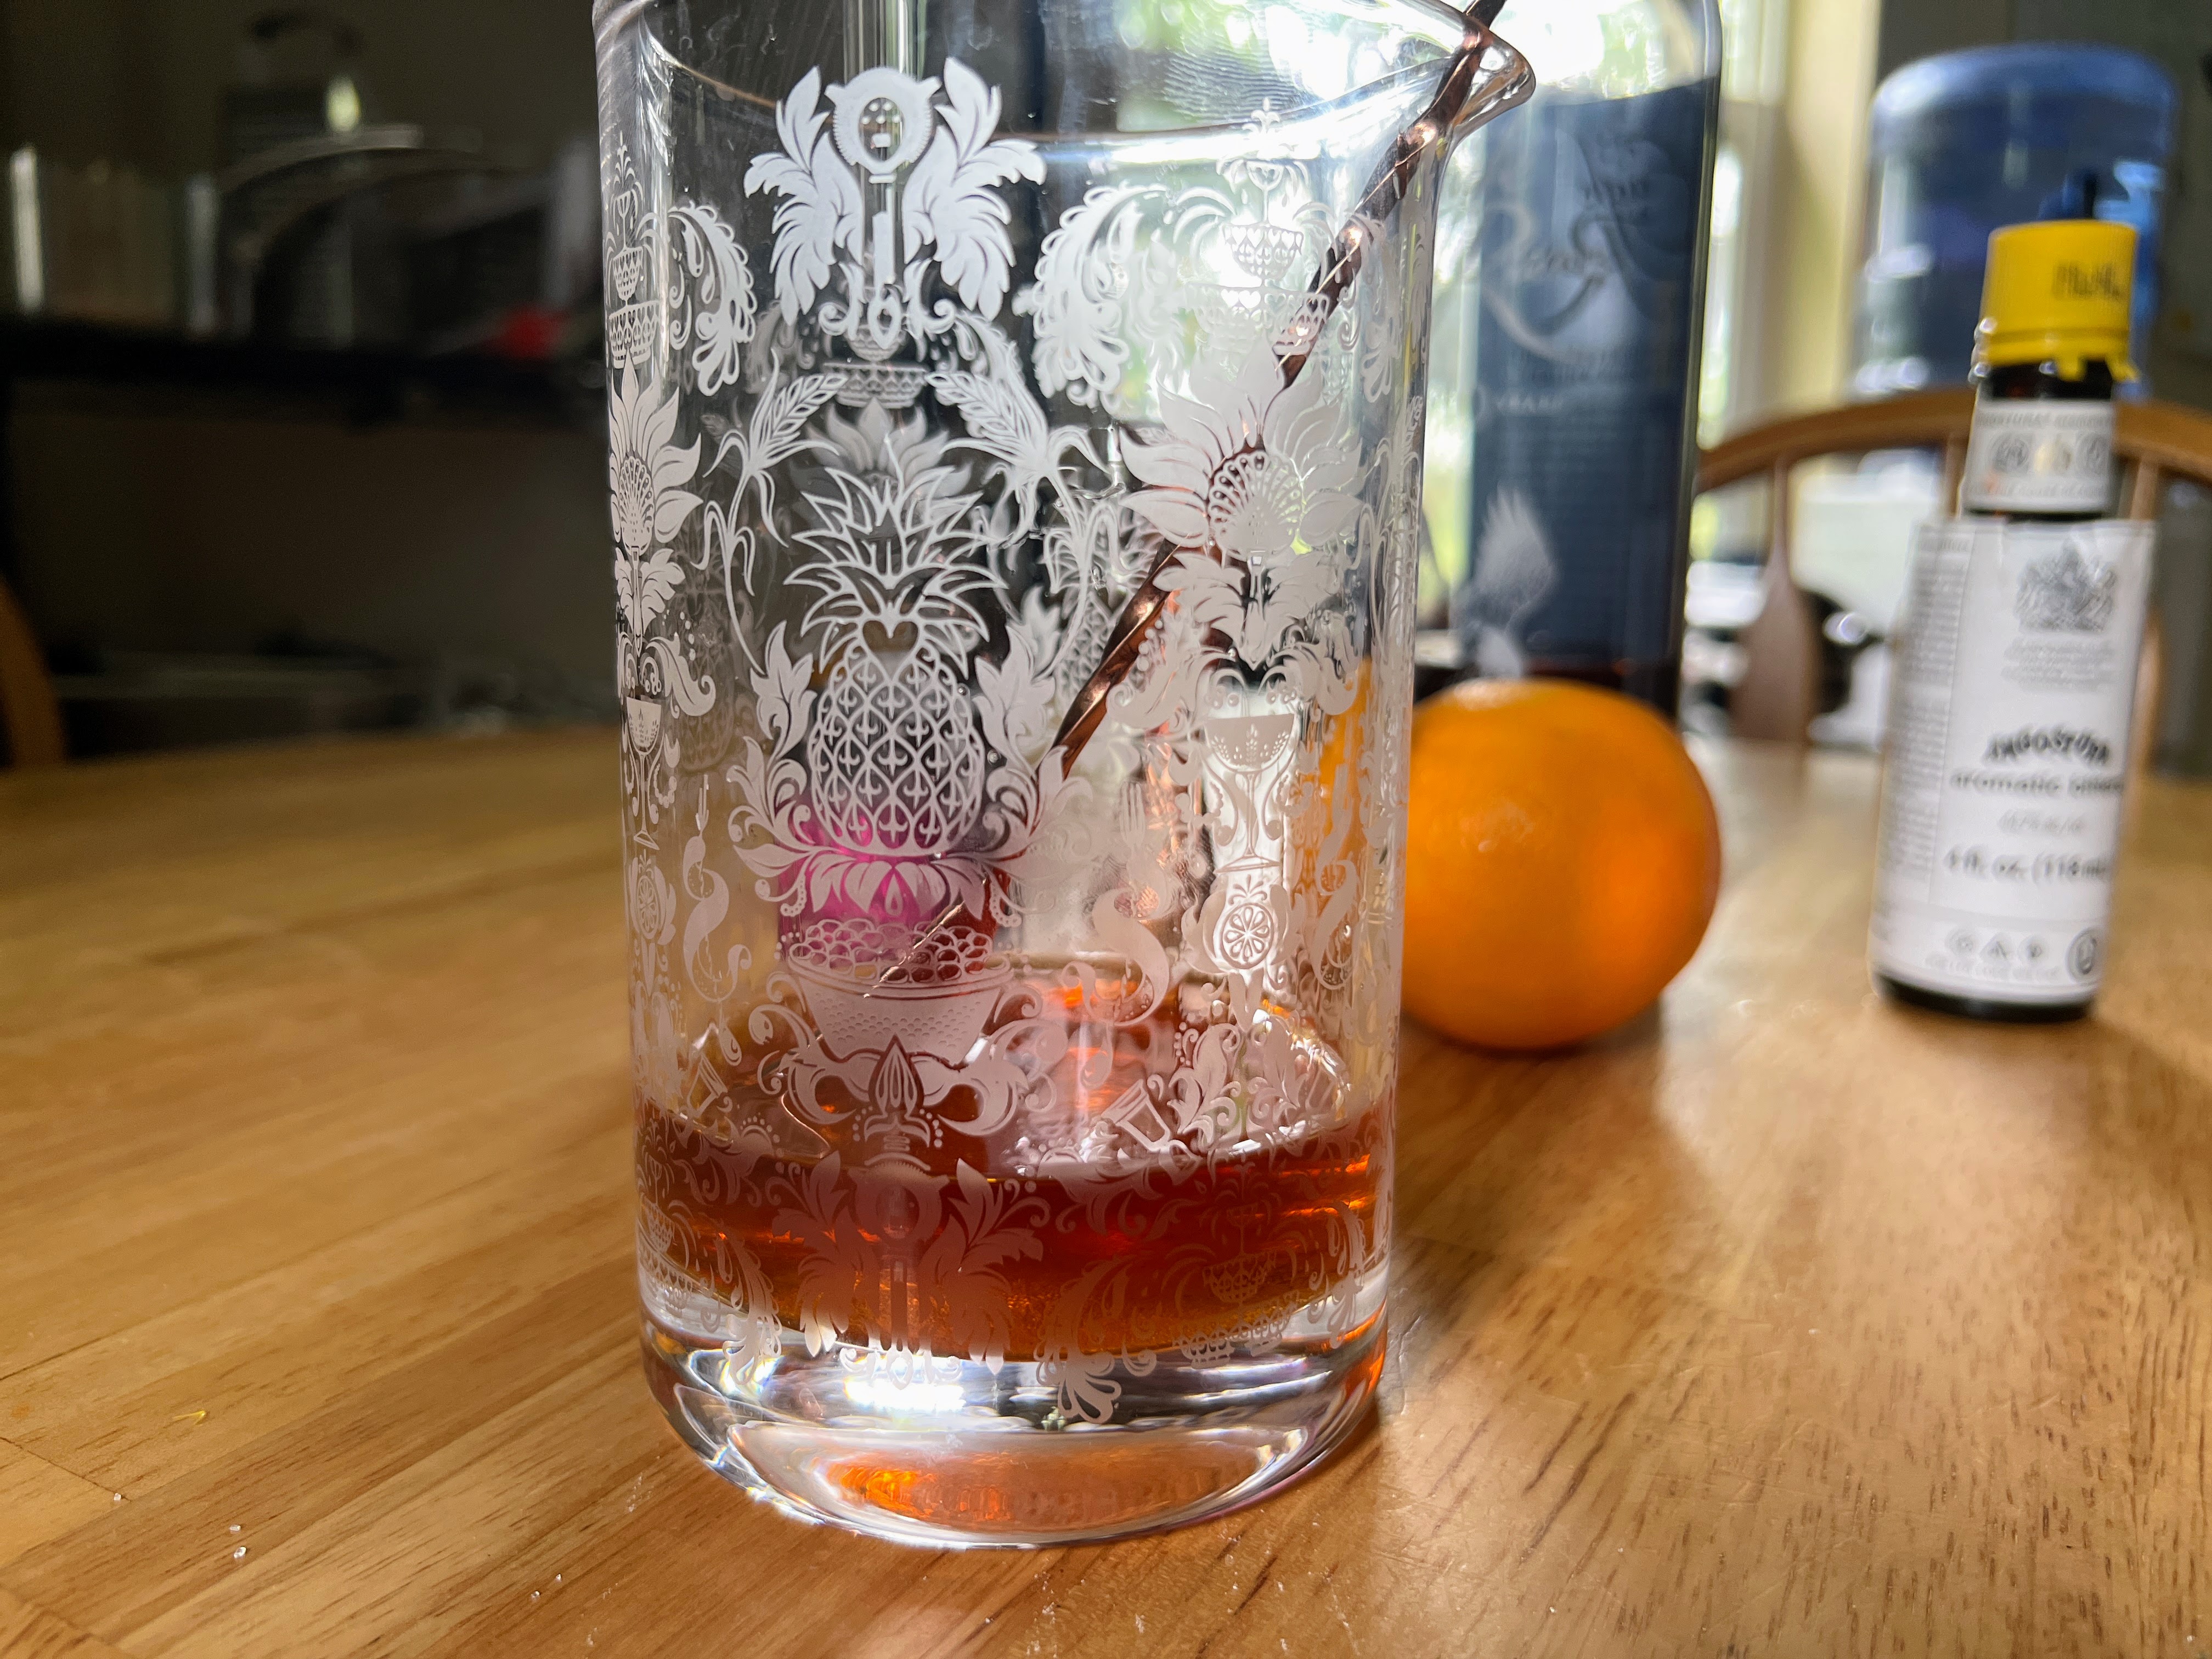 Bourbon Cocktails